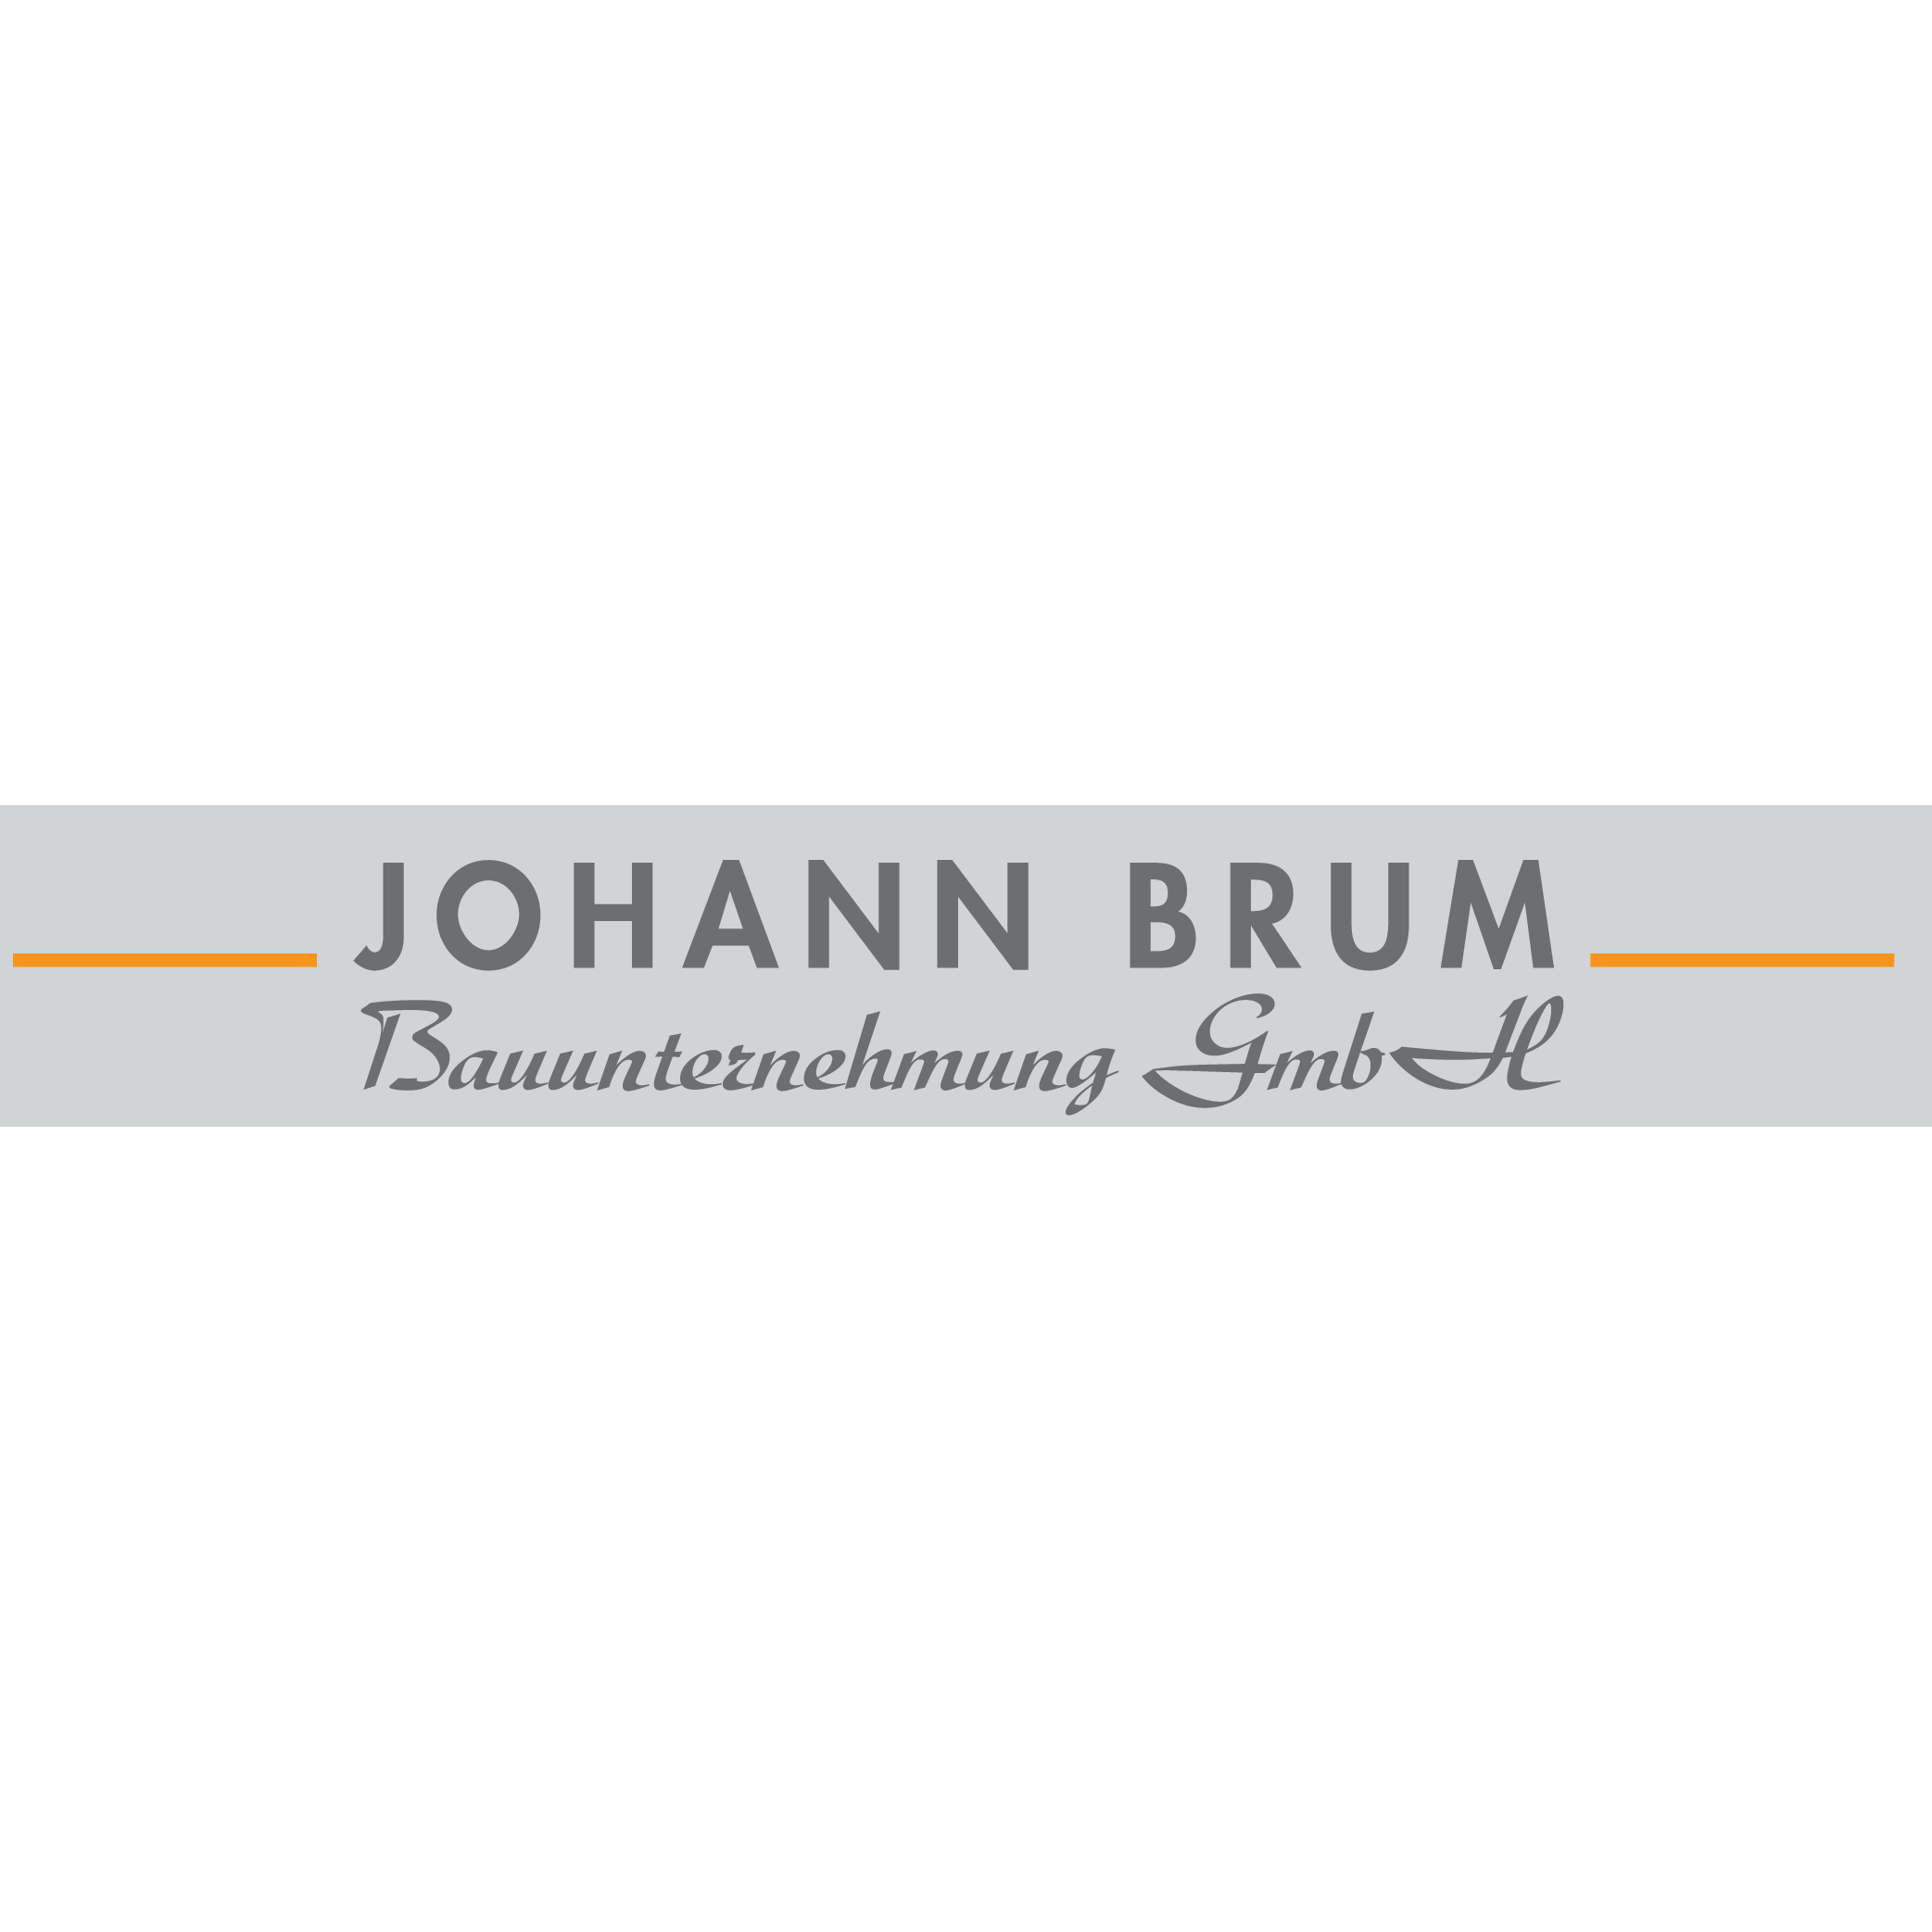 Bild zu Bauunternehmung GmbH Johann Brum in Frankfurt am Main